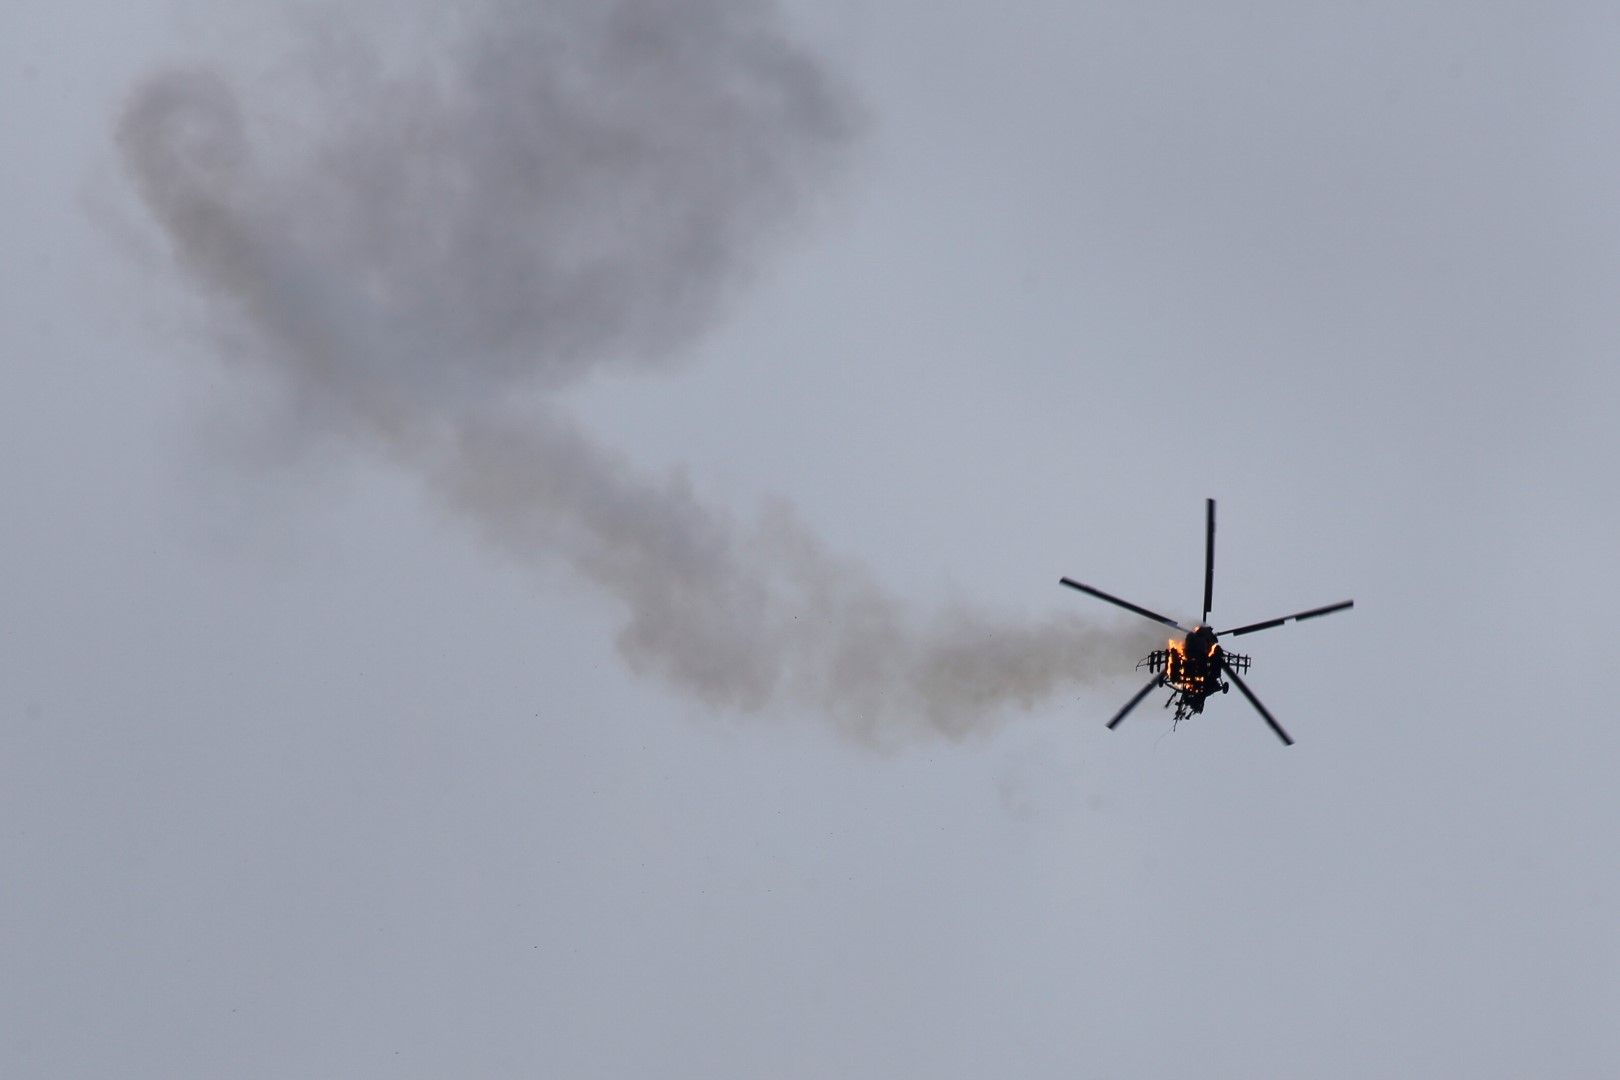 Хеликоптерът е свален в провинция Идлиб, където се водят тежки боеве между правителствените сили и бунтовниците